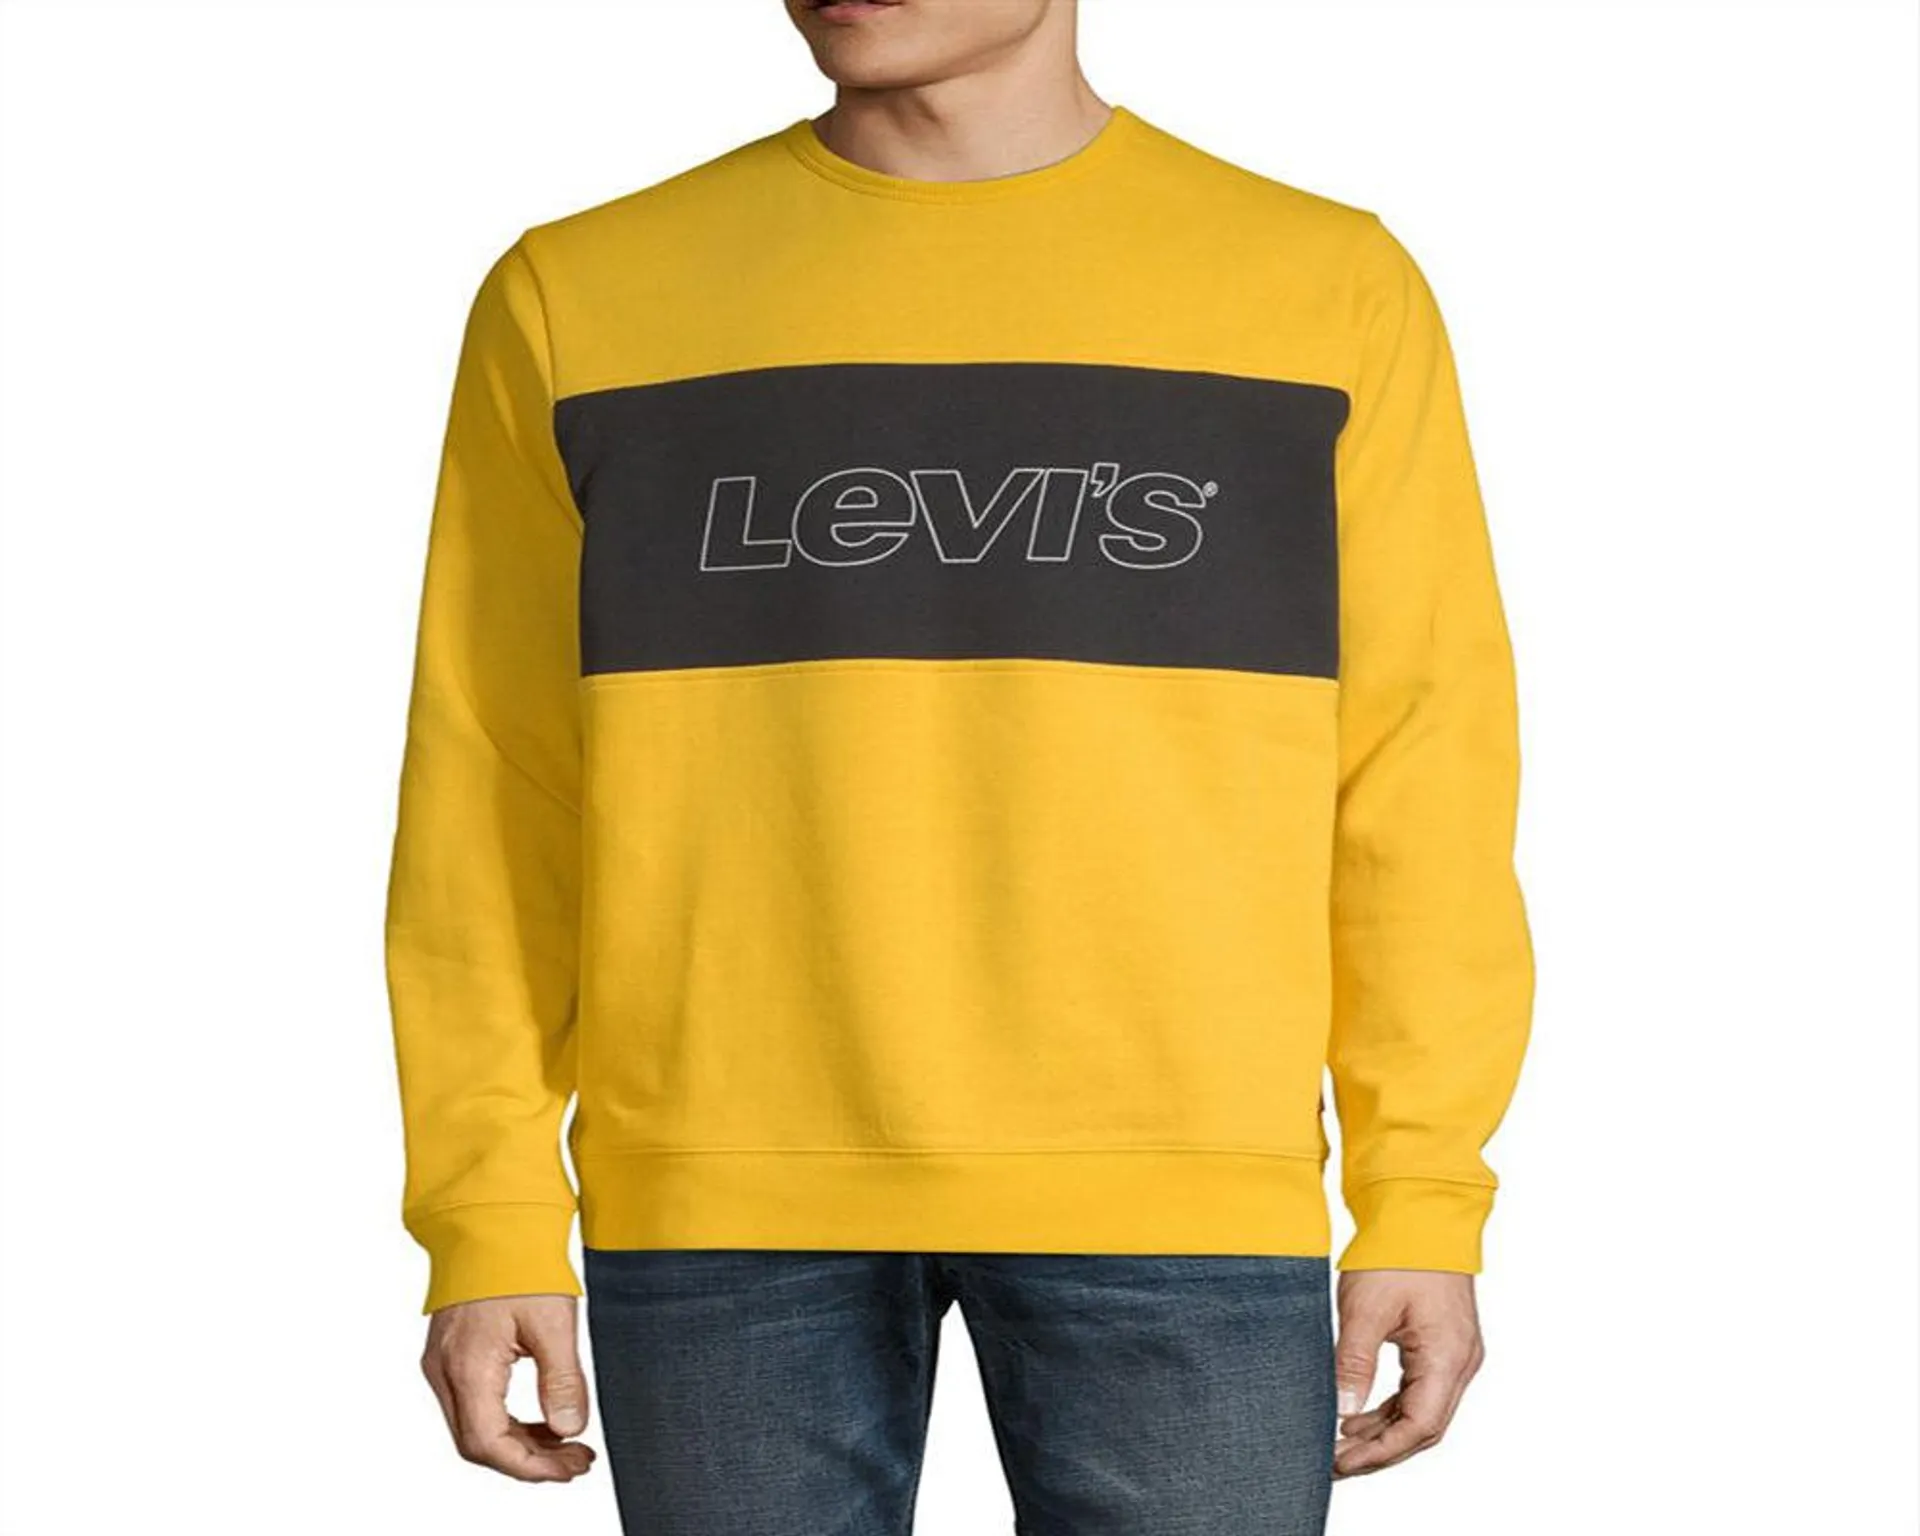 Levi's Men's Long Sleeve Fleece Sweatshirt Large Yellow Size Large